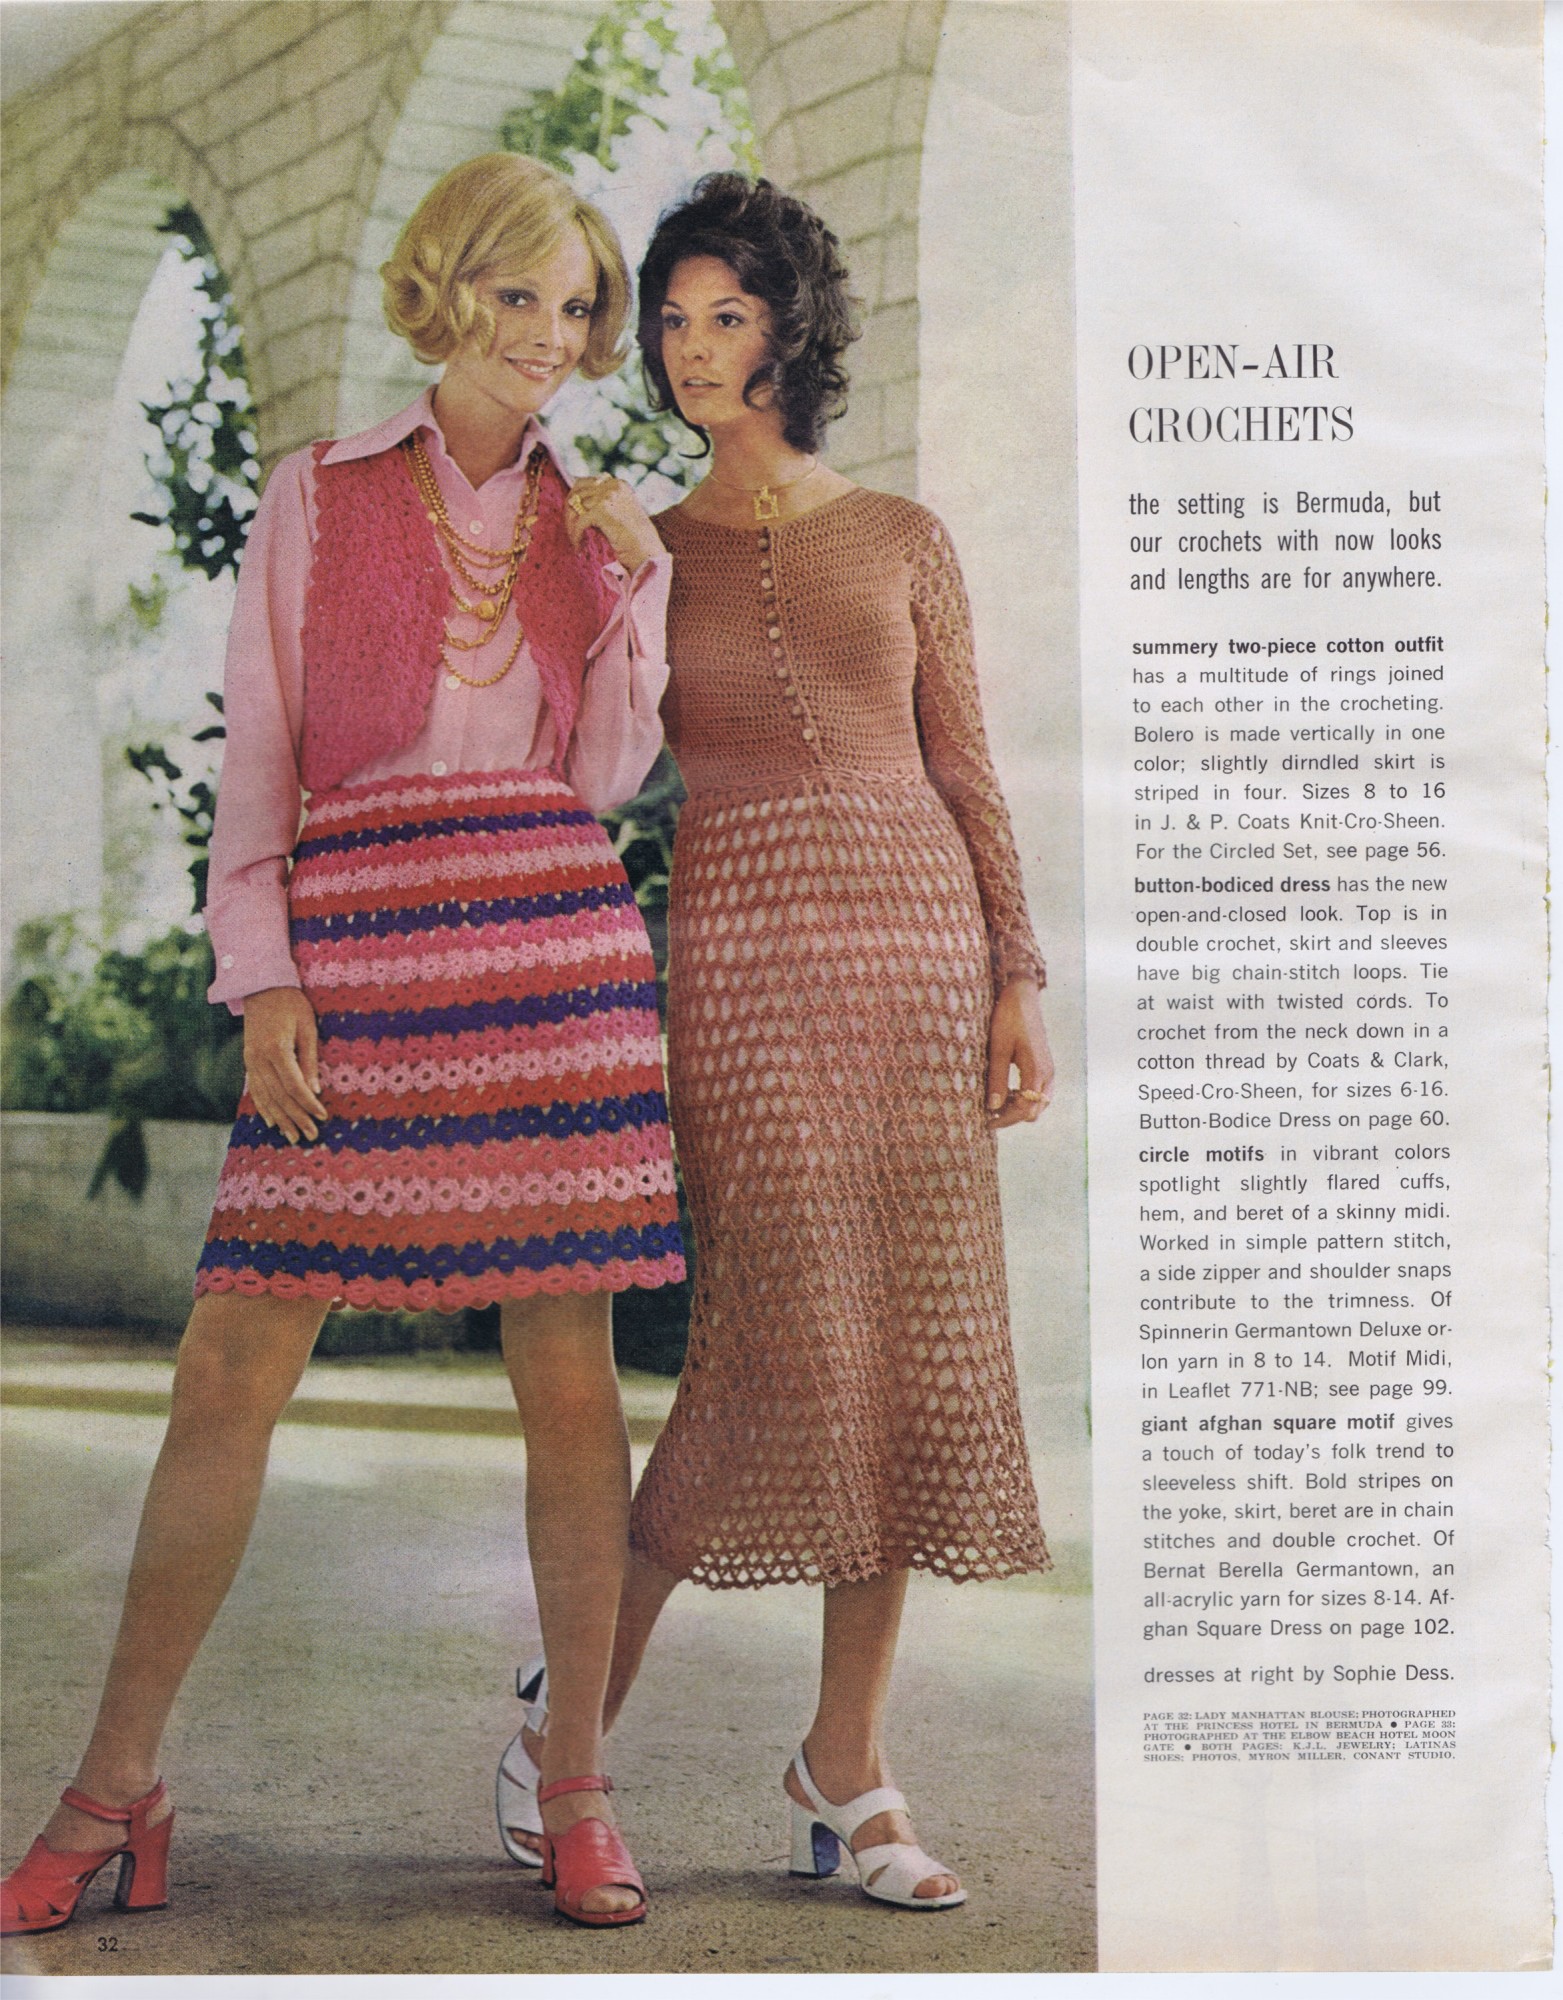 two piece bolero skirt coats clark size 8-16 crochet pattern button bodice dress leaflet 771 NB spinnerin